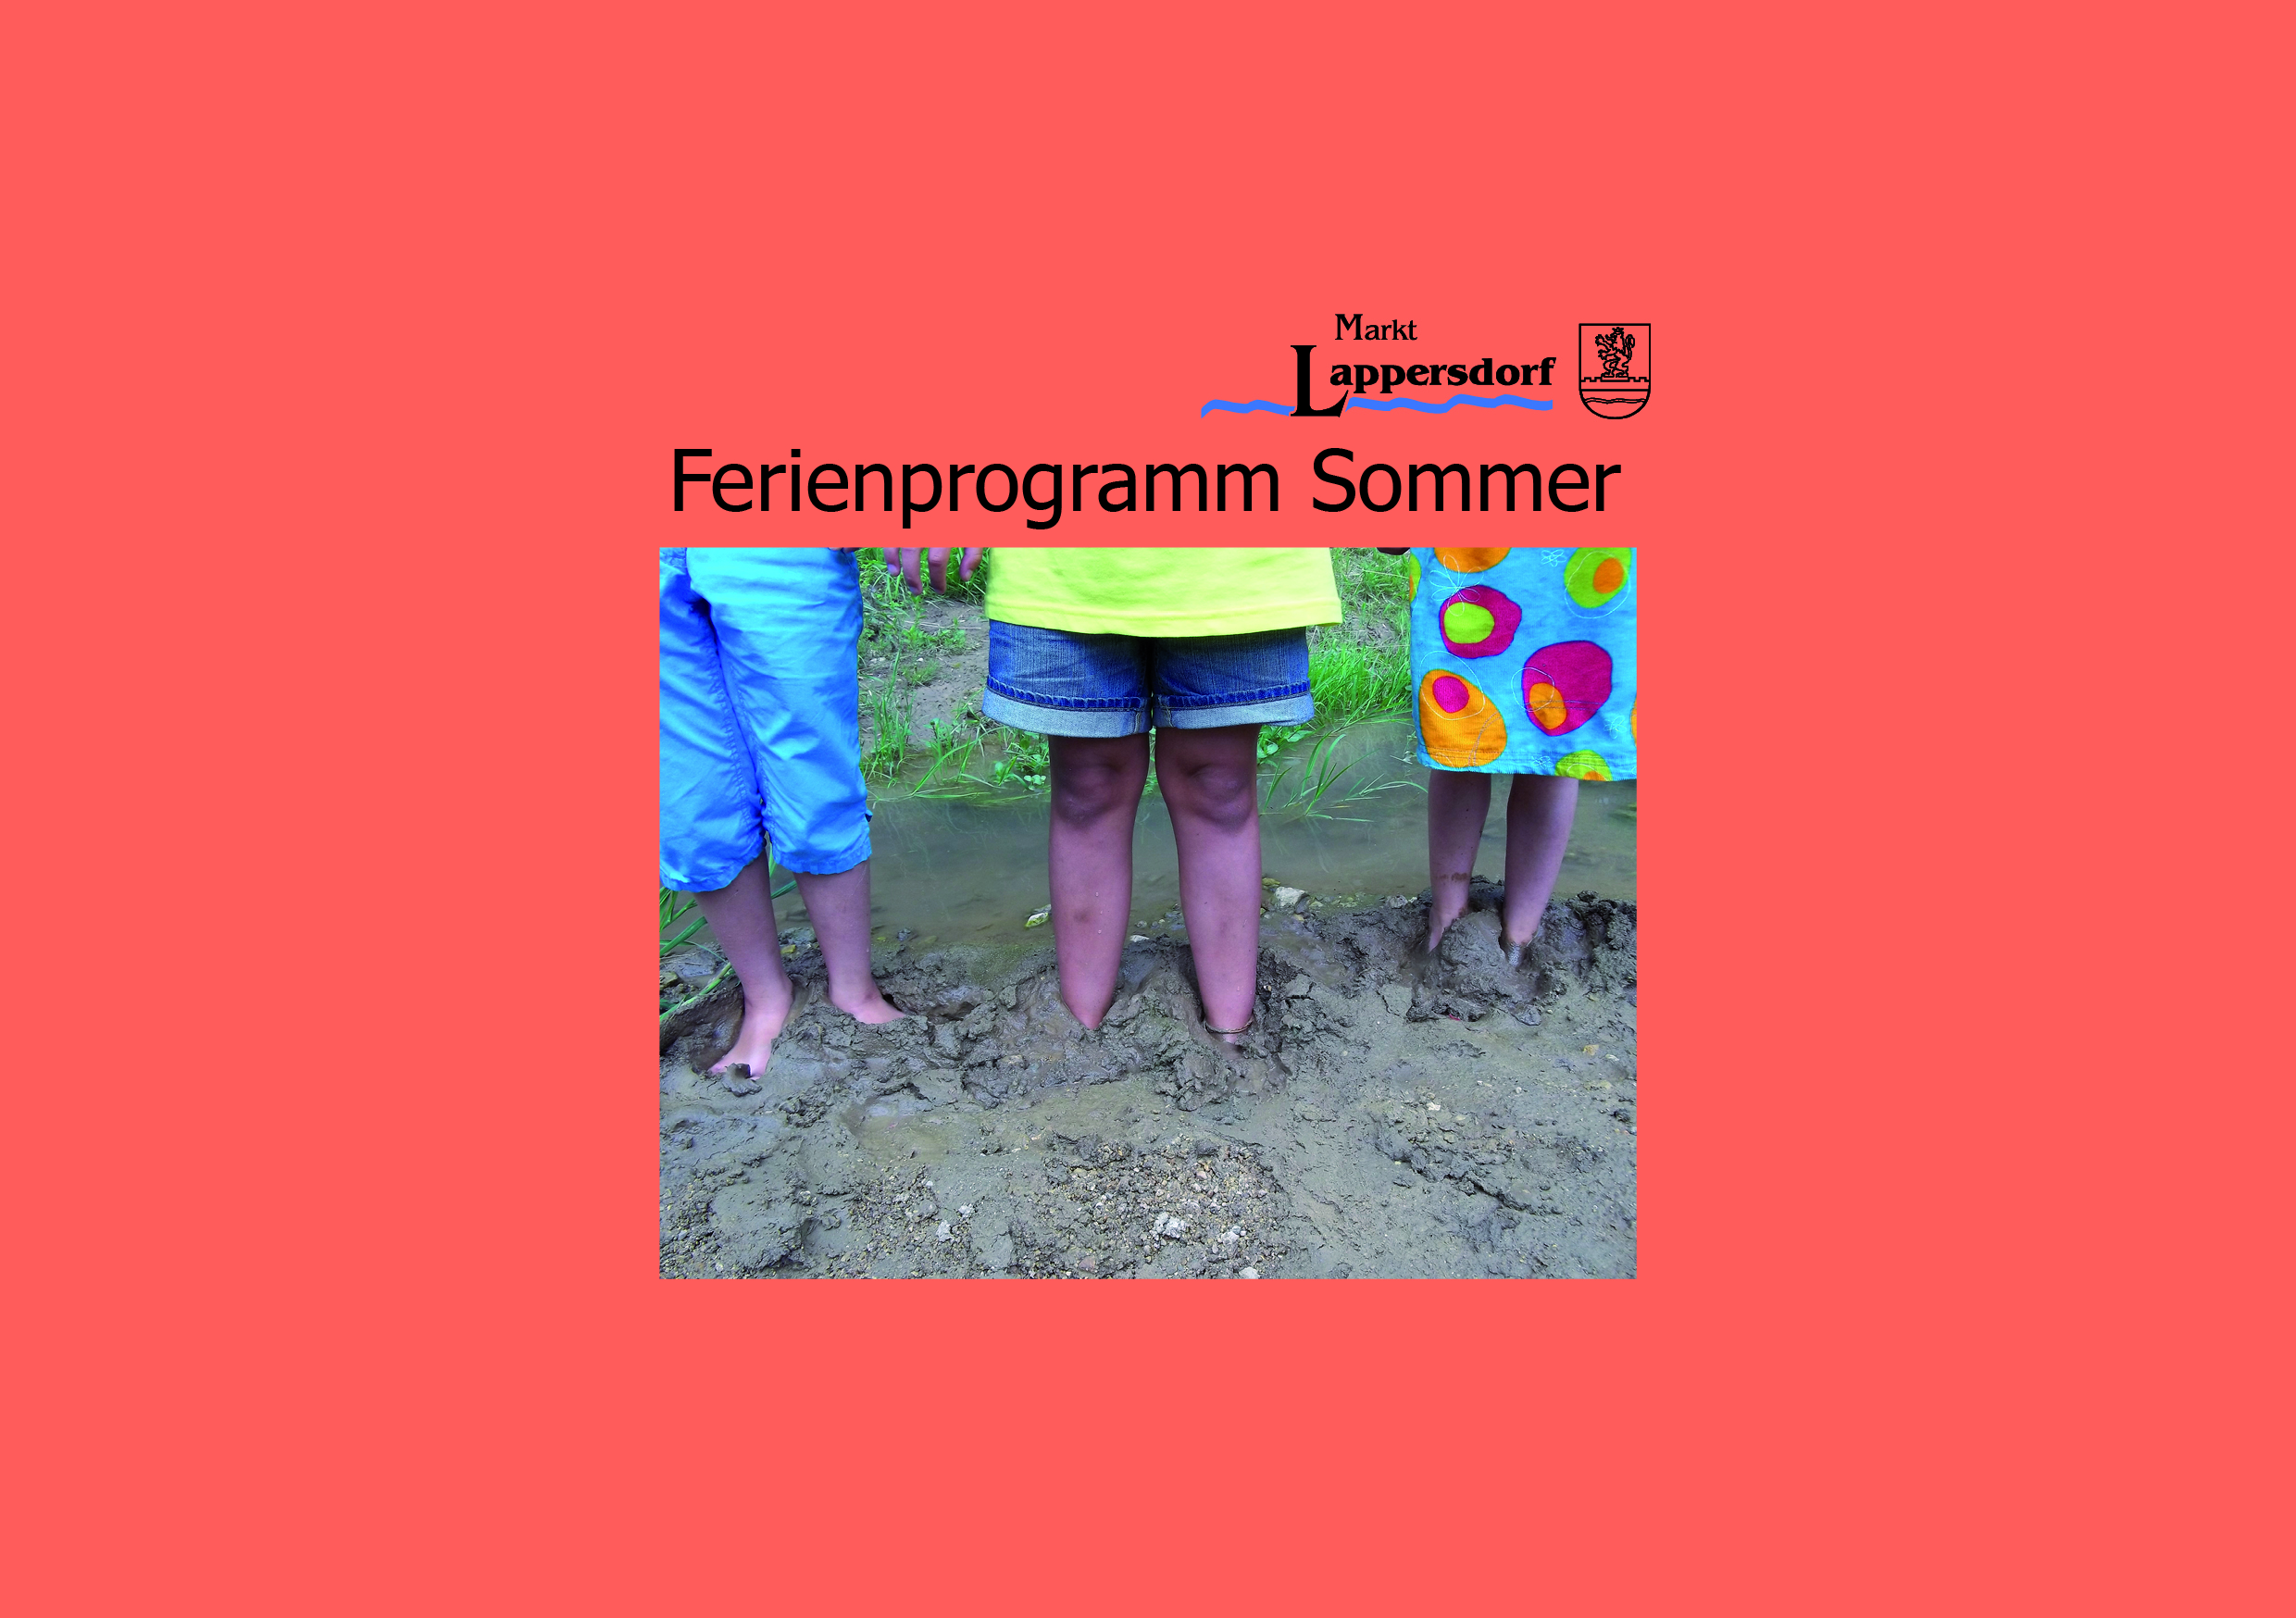 Sommerferienprogramm im Markt Lappersdorf